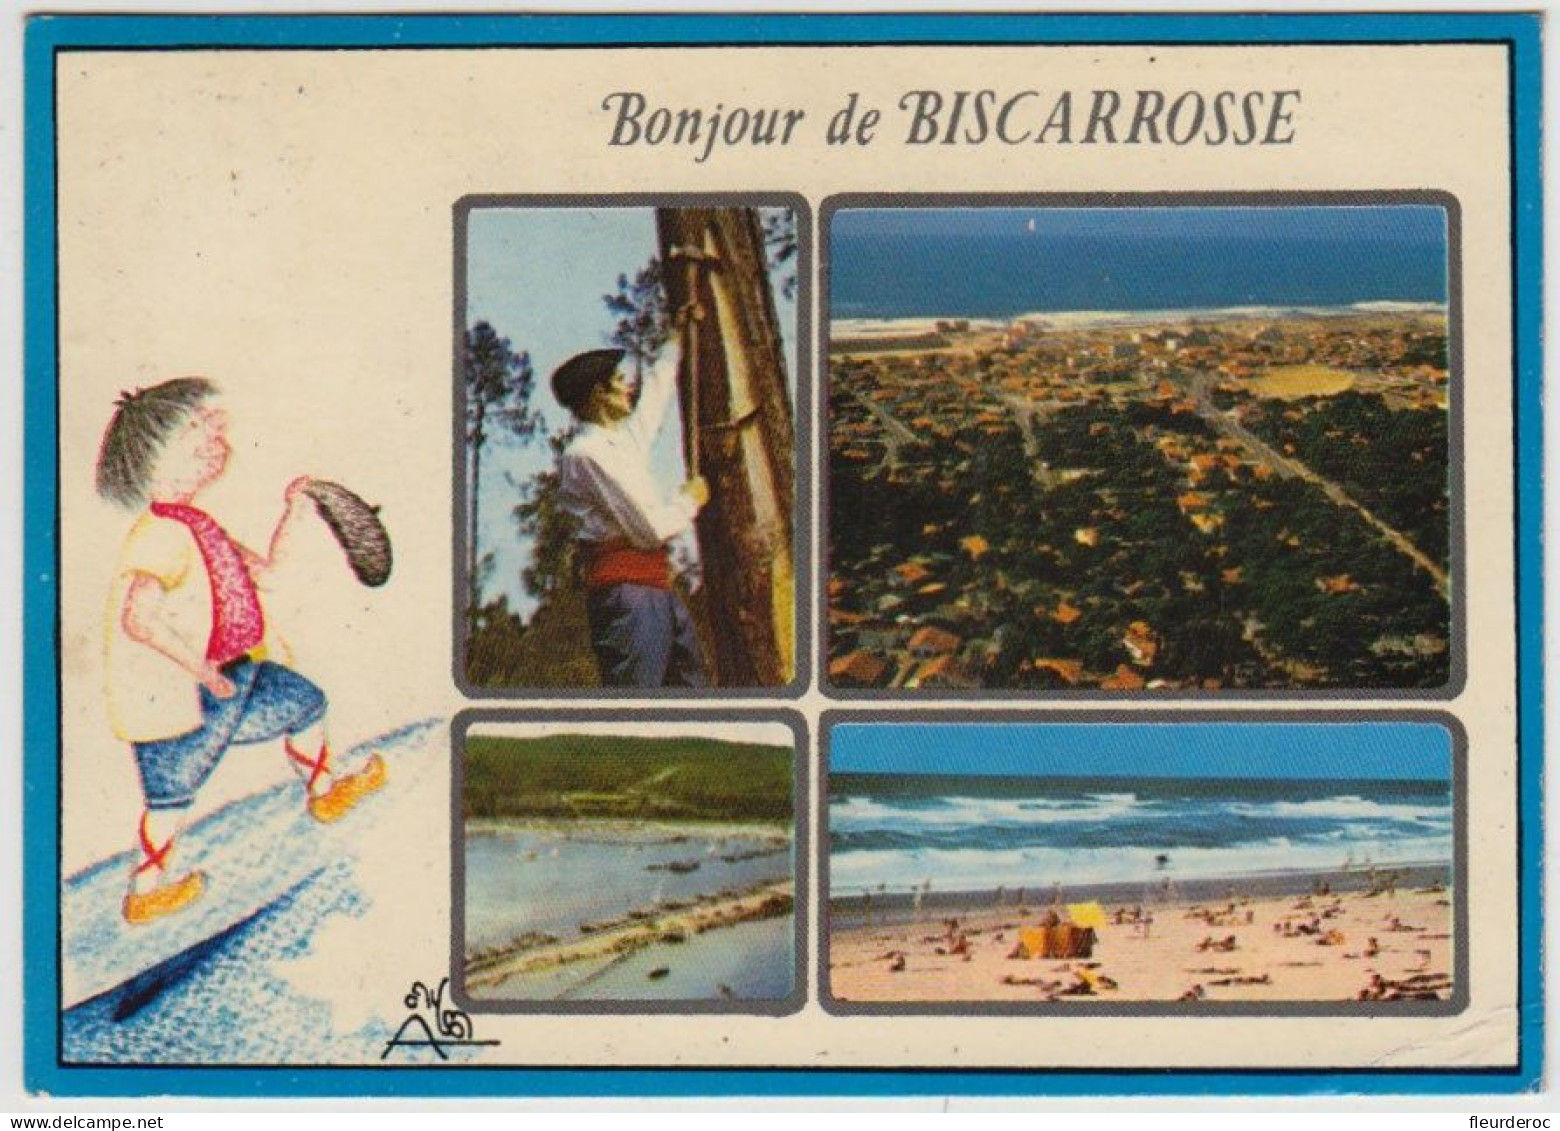 40 - BM53463CPM - BISCARROSSE - Bonjour - Bon état - LANDES - Biscarrosse